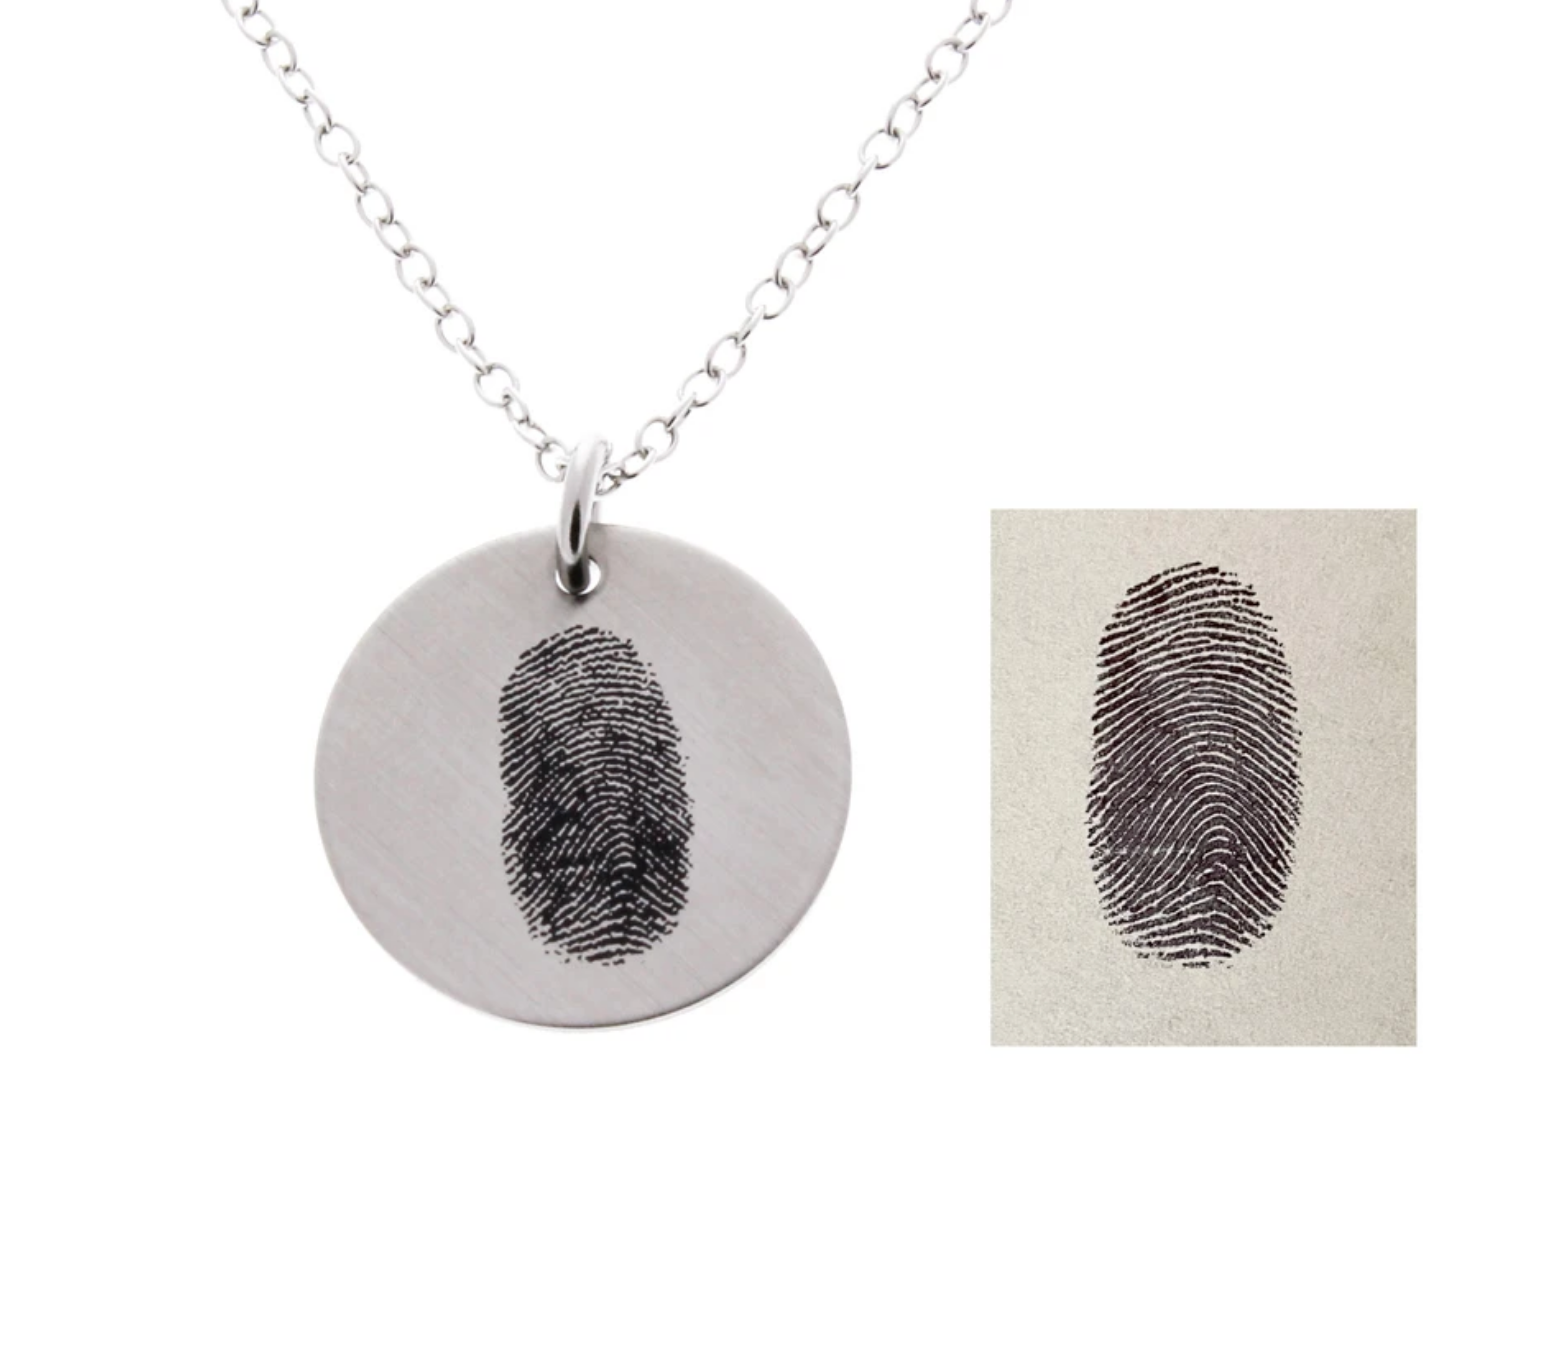 Fingerprints Necklace - Customize